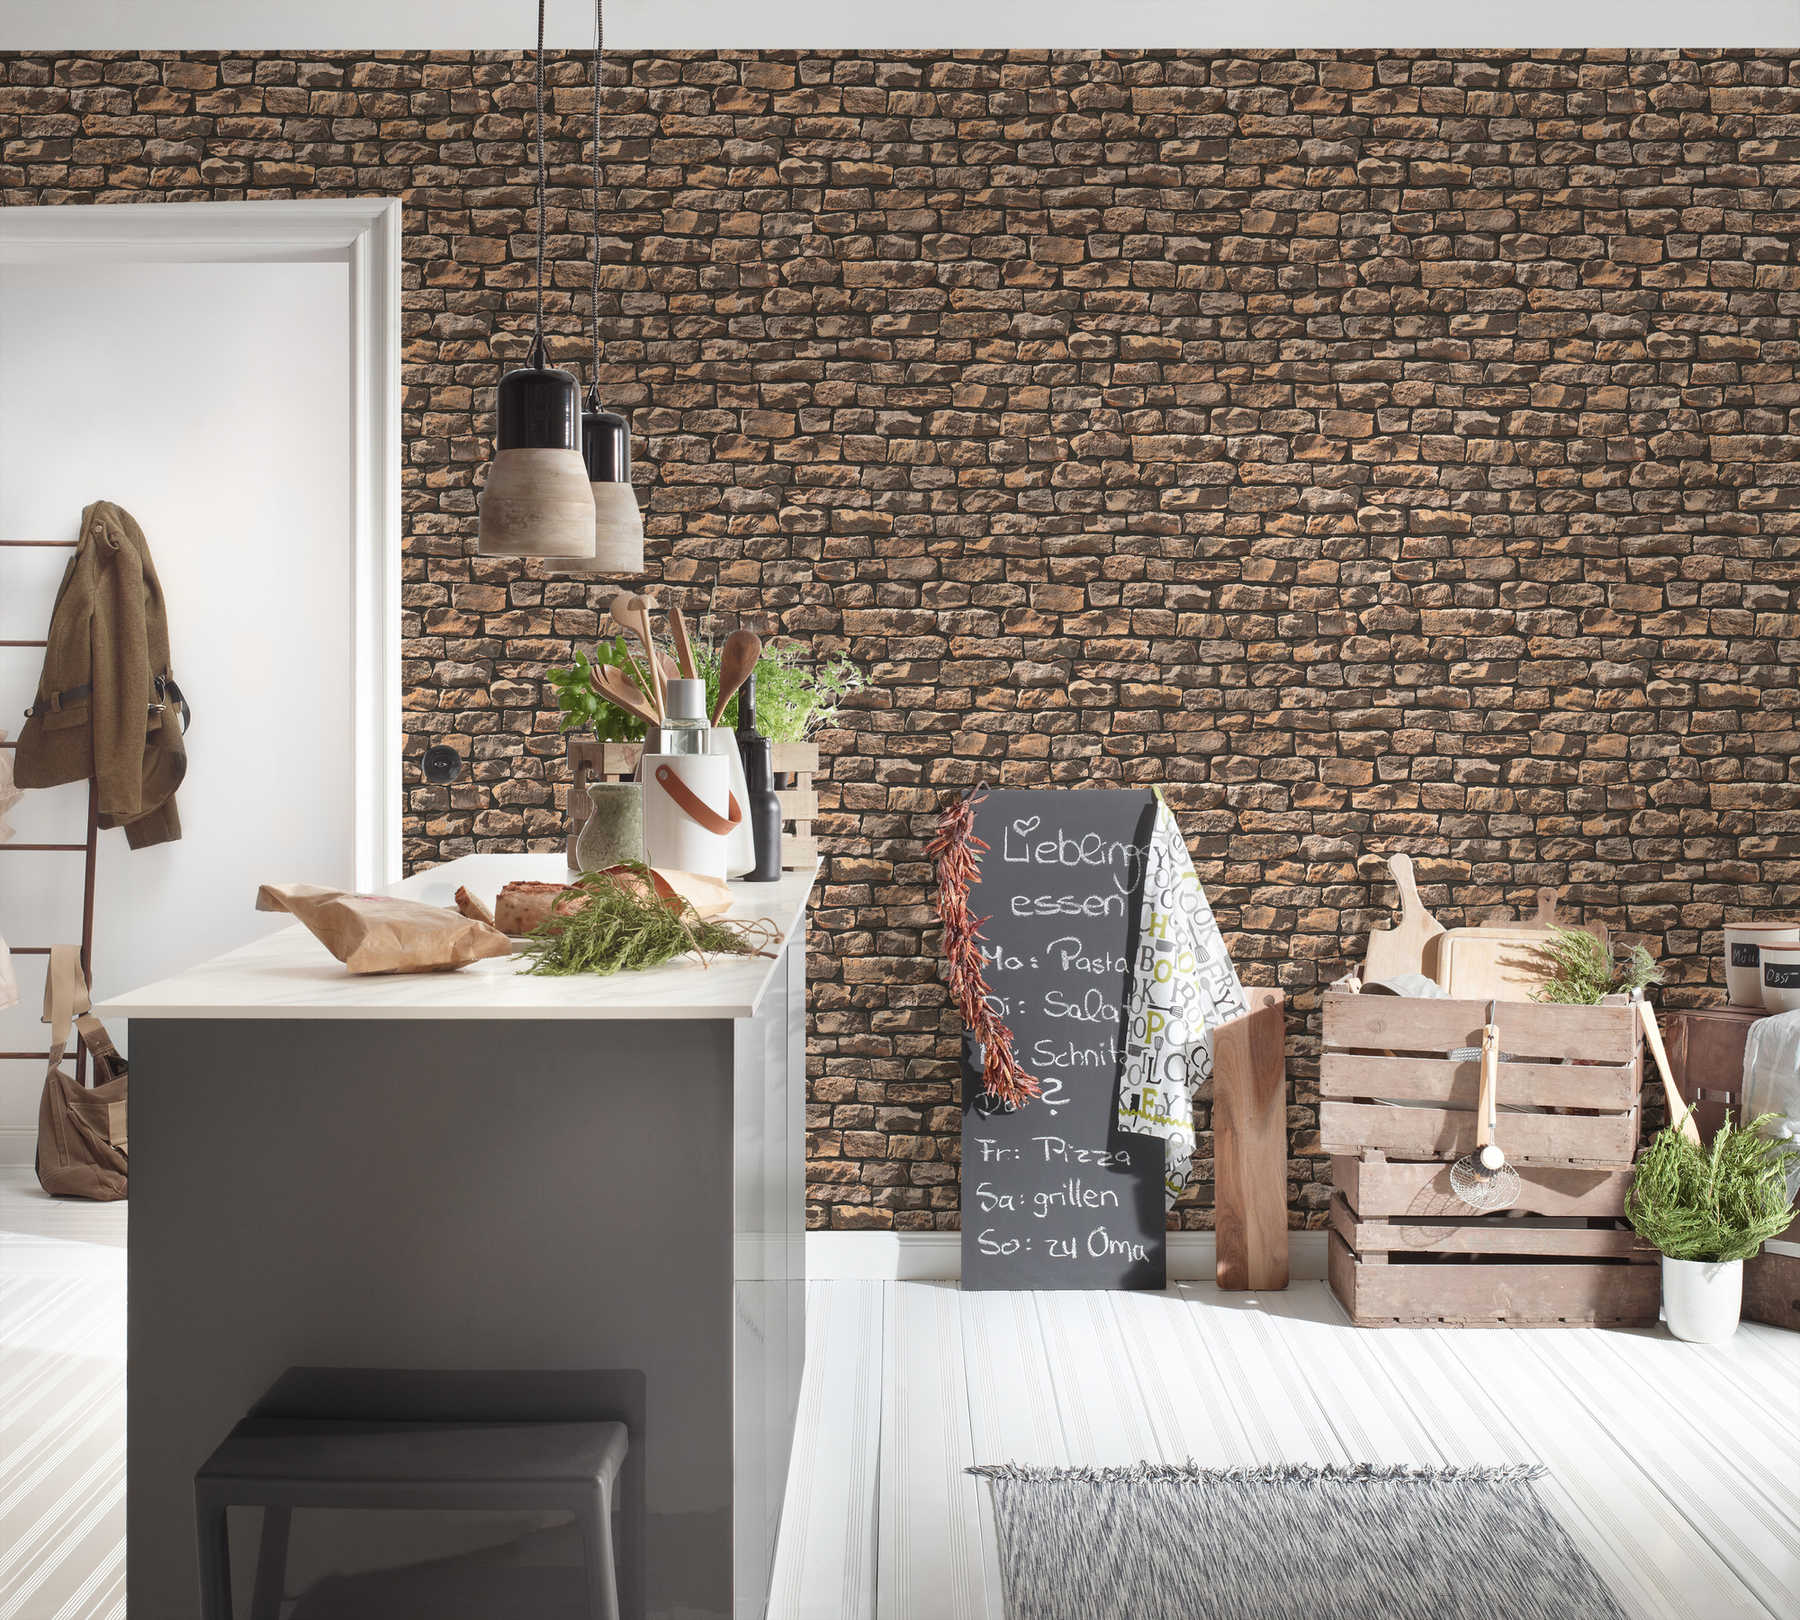             Mauerwerk-Tapete mit realistischen Natursteinen – Braun, Beige, Schwarz
        